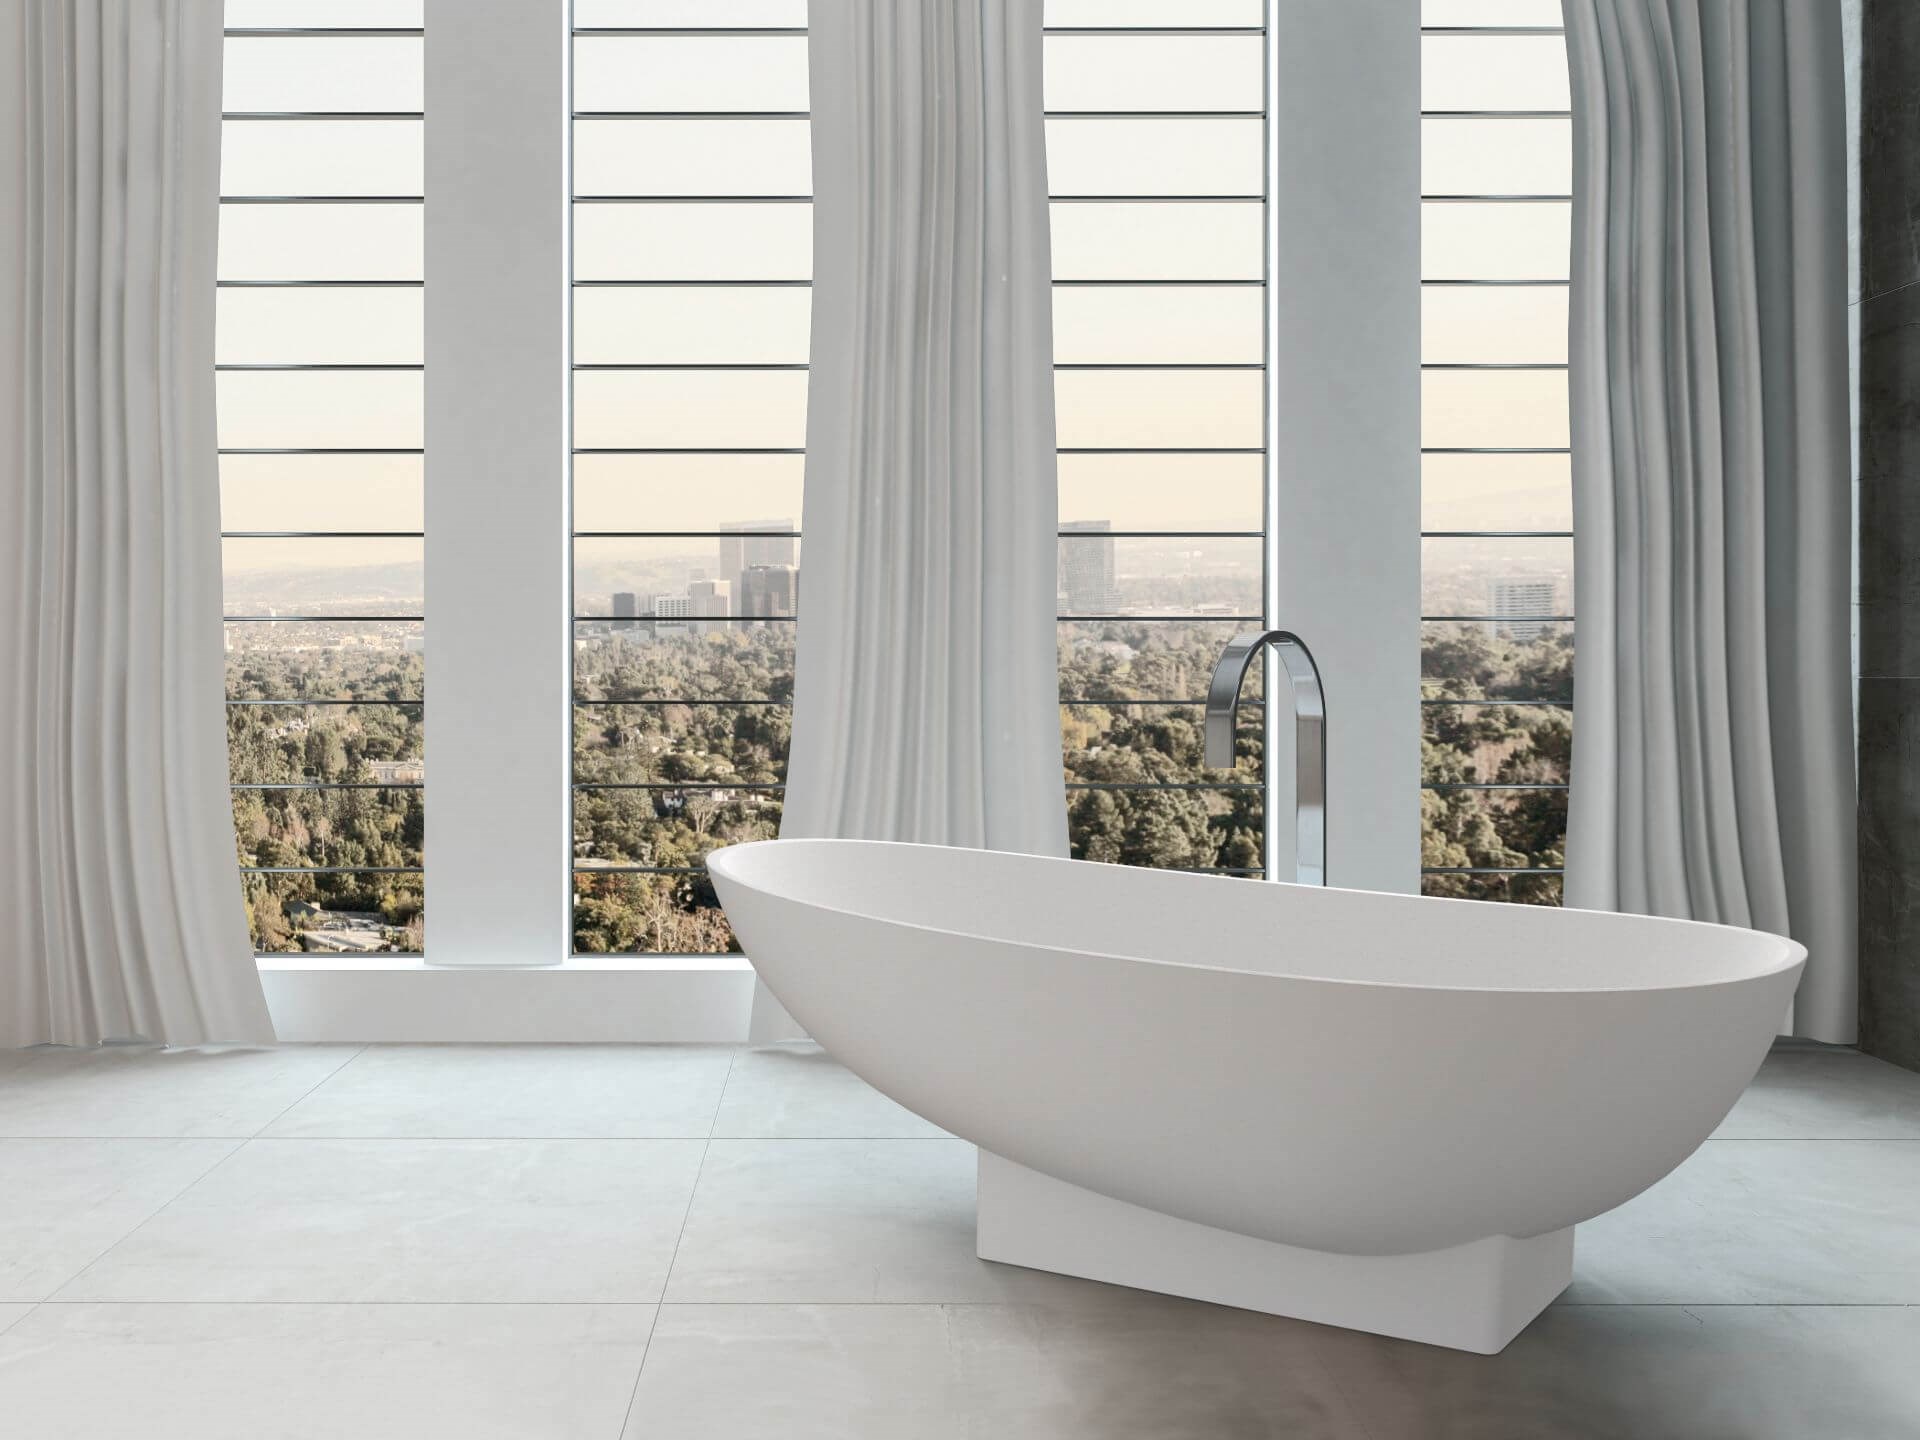 Miljøbilde frittstående badekar. Copenhagen fra Interform. Badekar midt på gulv med store vinduer.